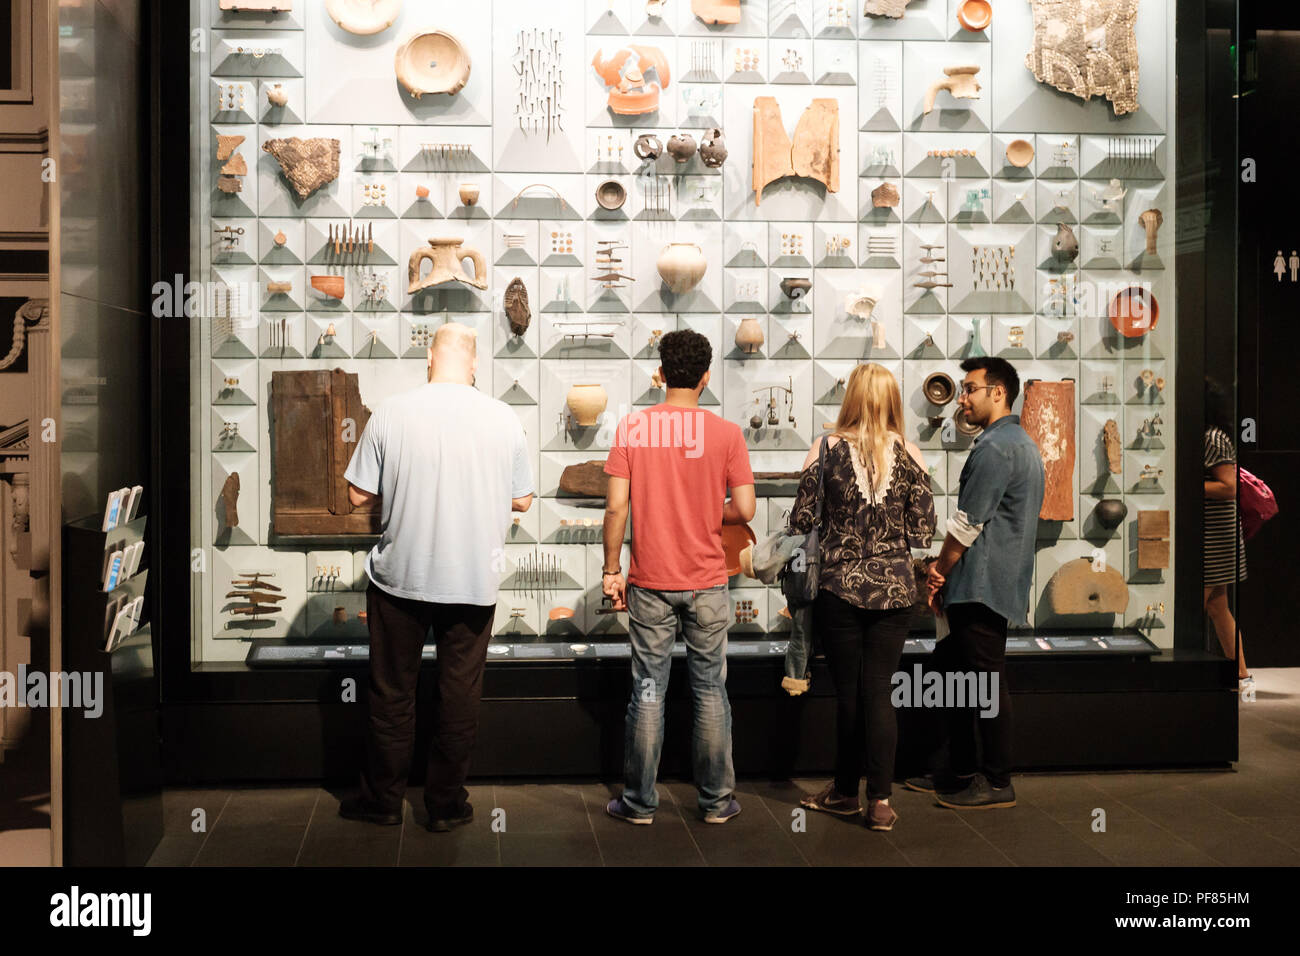 Besucher untersuchen eine Anzeige bei der römischen Artefakten bei der Restaurierung der Tempel des Mithras, London Mithraeum, der Londoner City gefunden Stockfoto